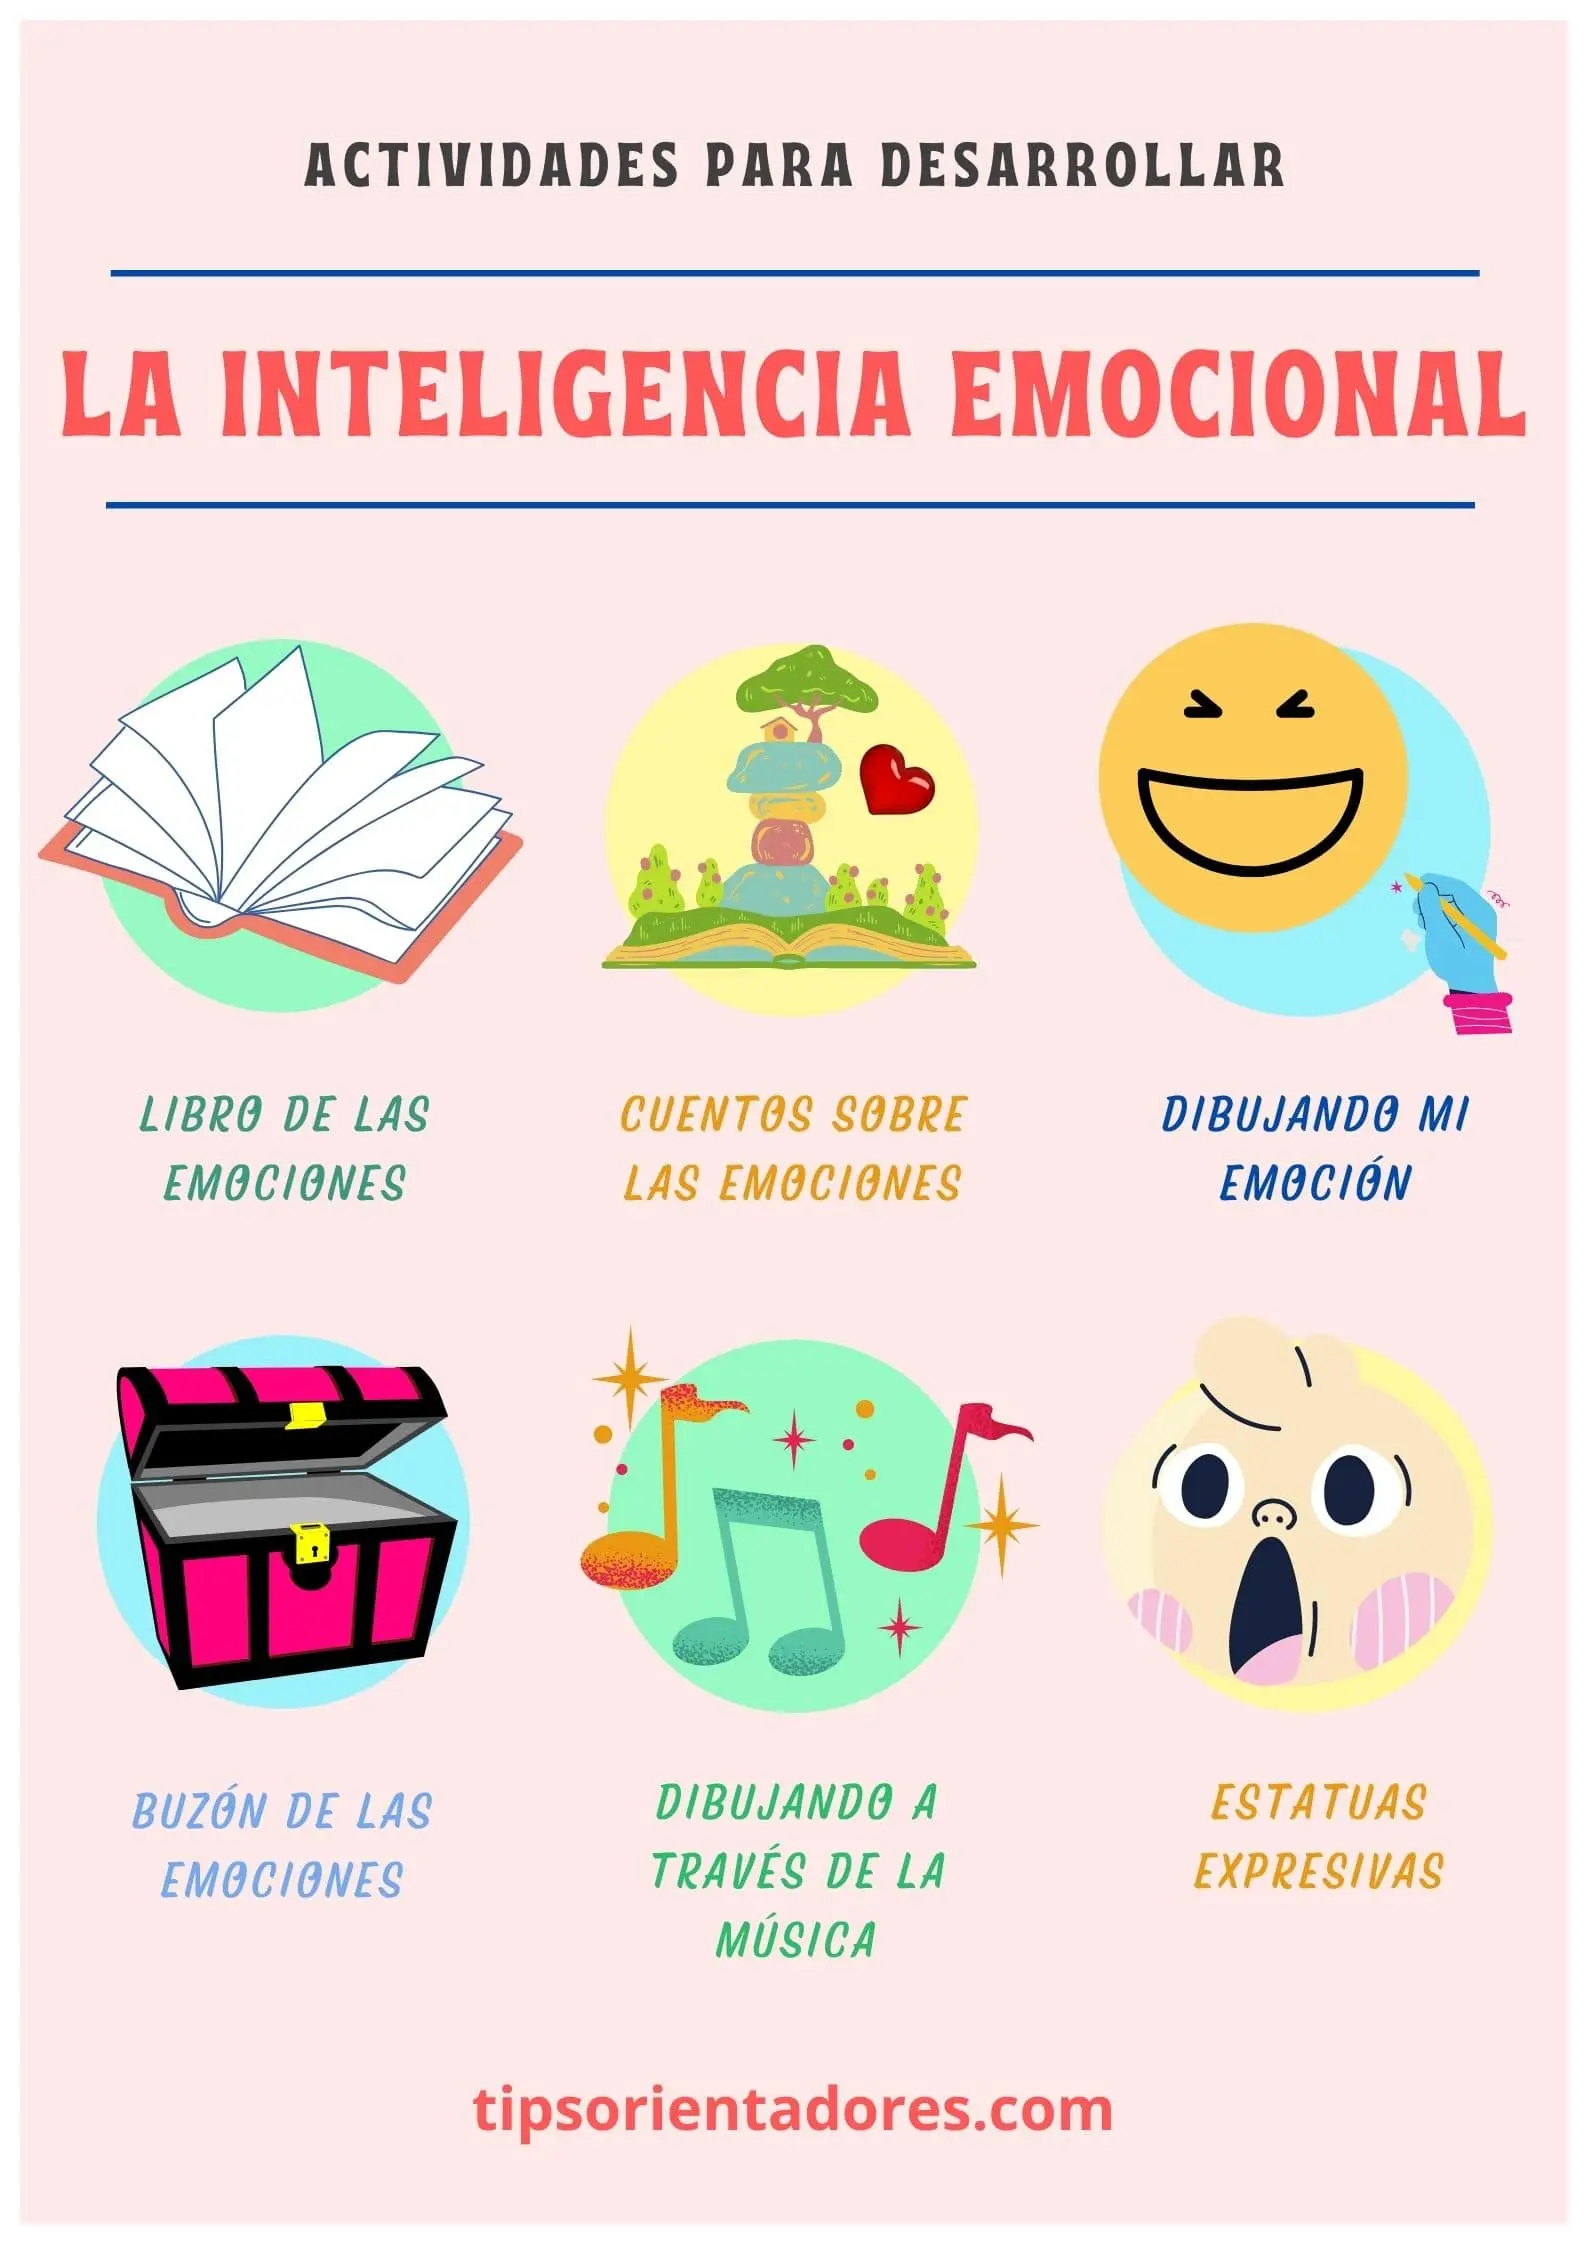 actividades ludicas para explicar inteligencia emocional - Qué ejercicios o actividades pueden fomentar la inteligencia emocional en los niños